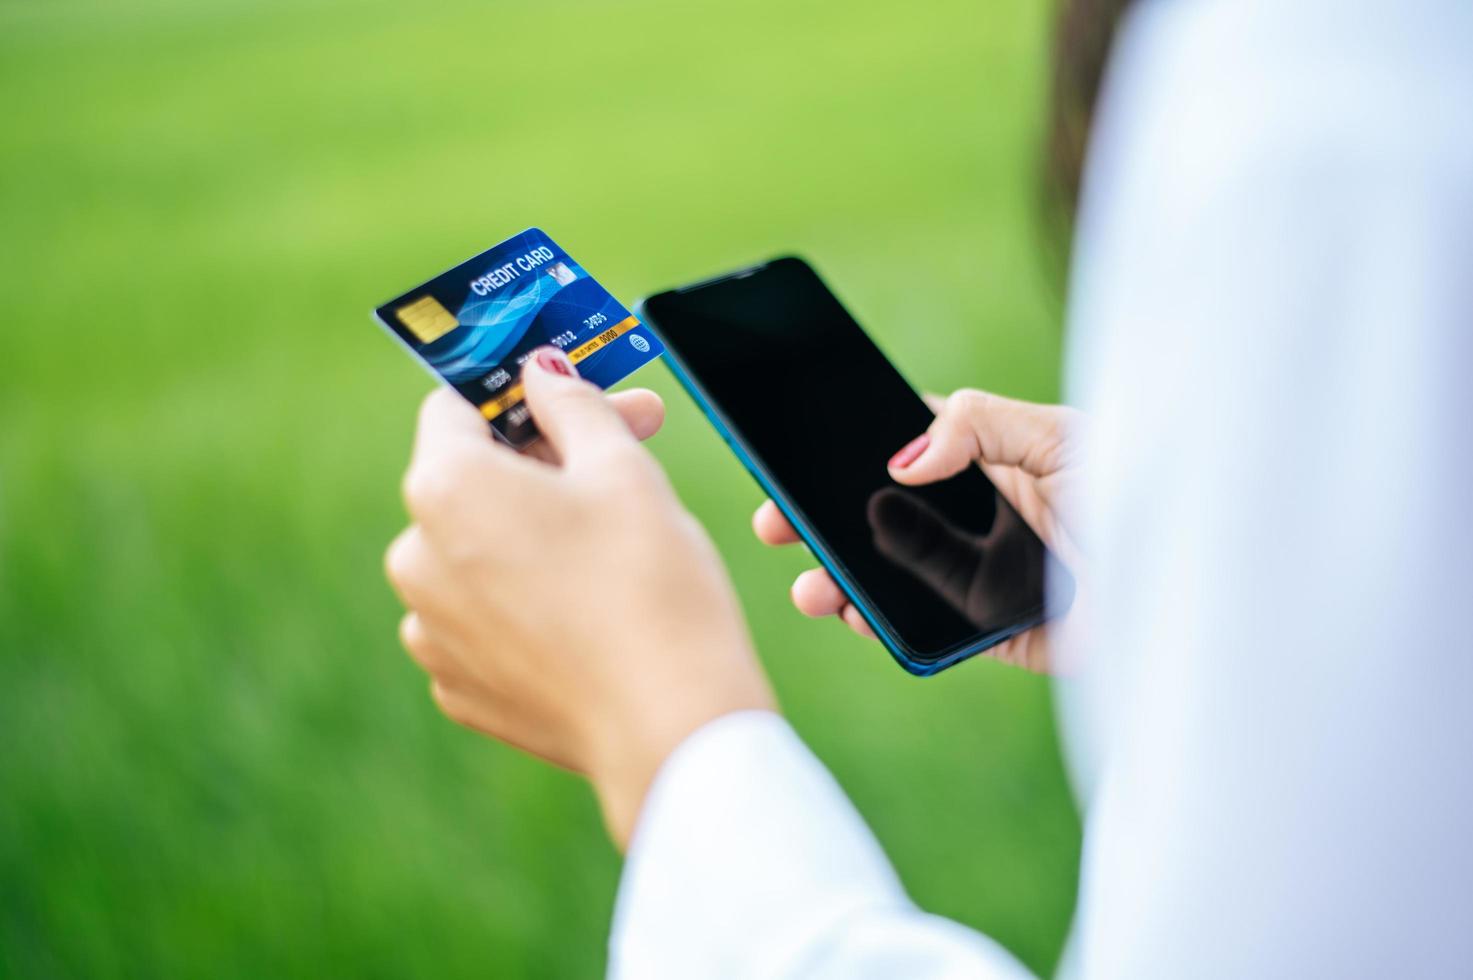 pagamento della merce con carta di credito tramite smartphone foto